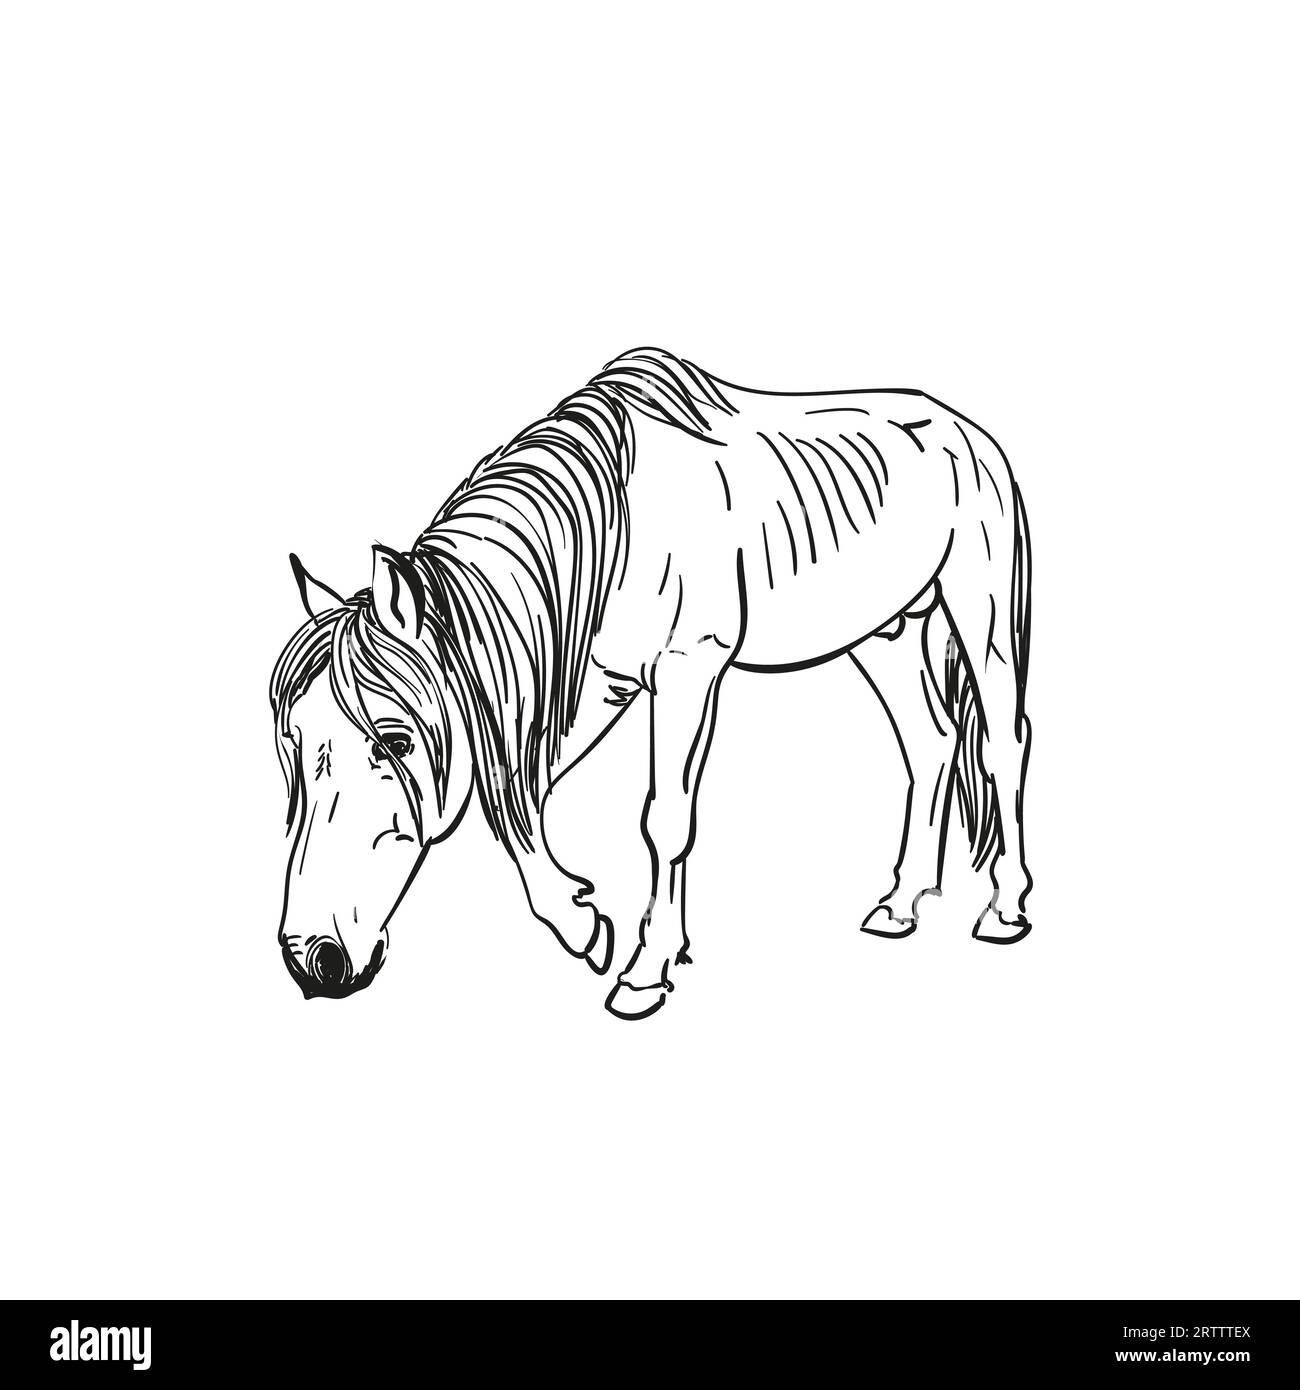 Croquis de cheval affamé avec des côtes saillantes marche lentement avec la tête vers le bas, portrait en longueur isolé en noir et blanc illustration dessinée à la main vectorielle Illustration de Vecteur